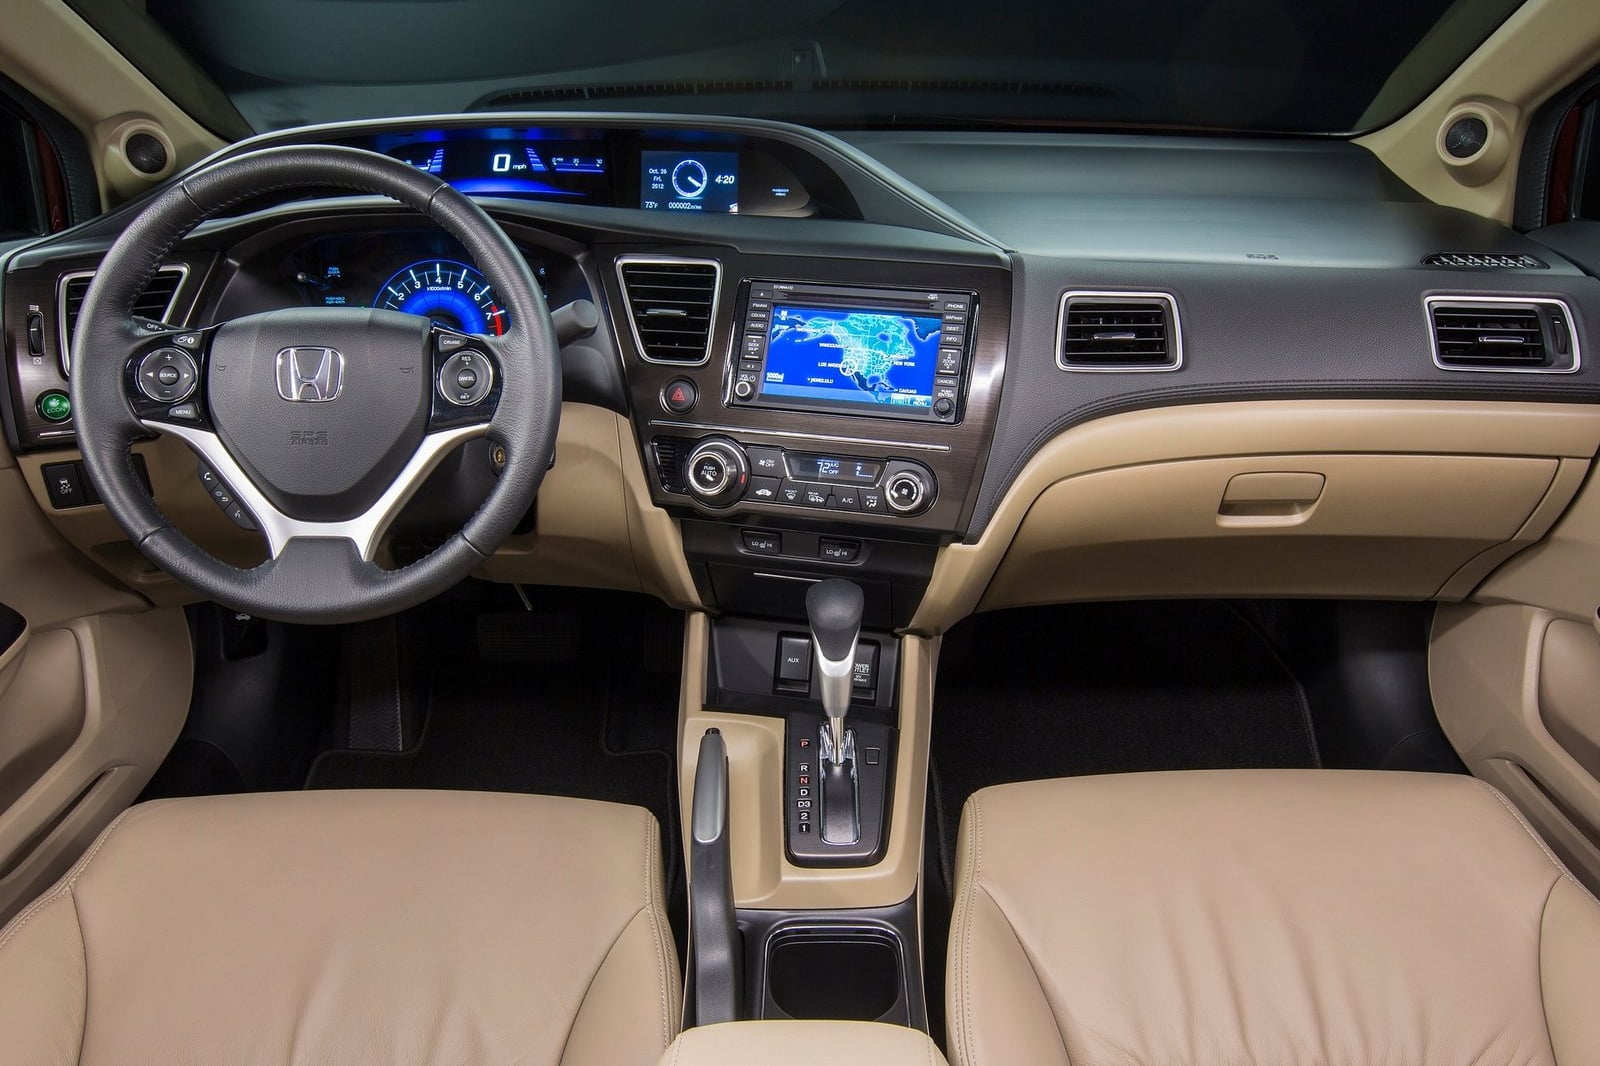 Honda Civic 2015 có giá từ 780 triệu đồng